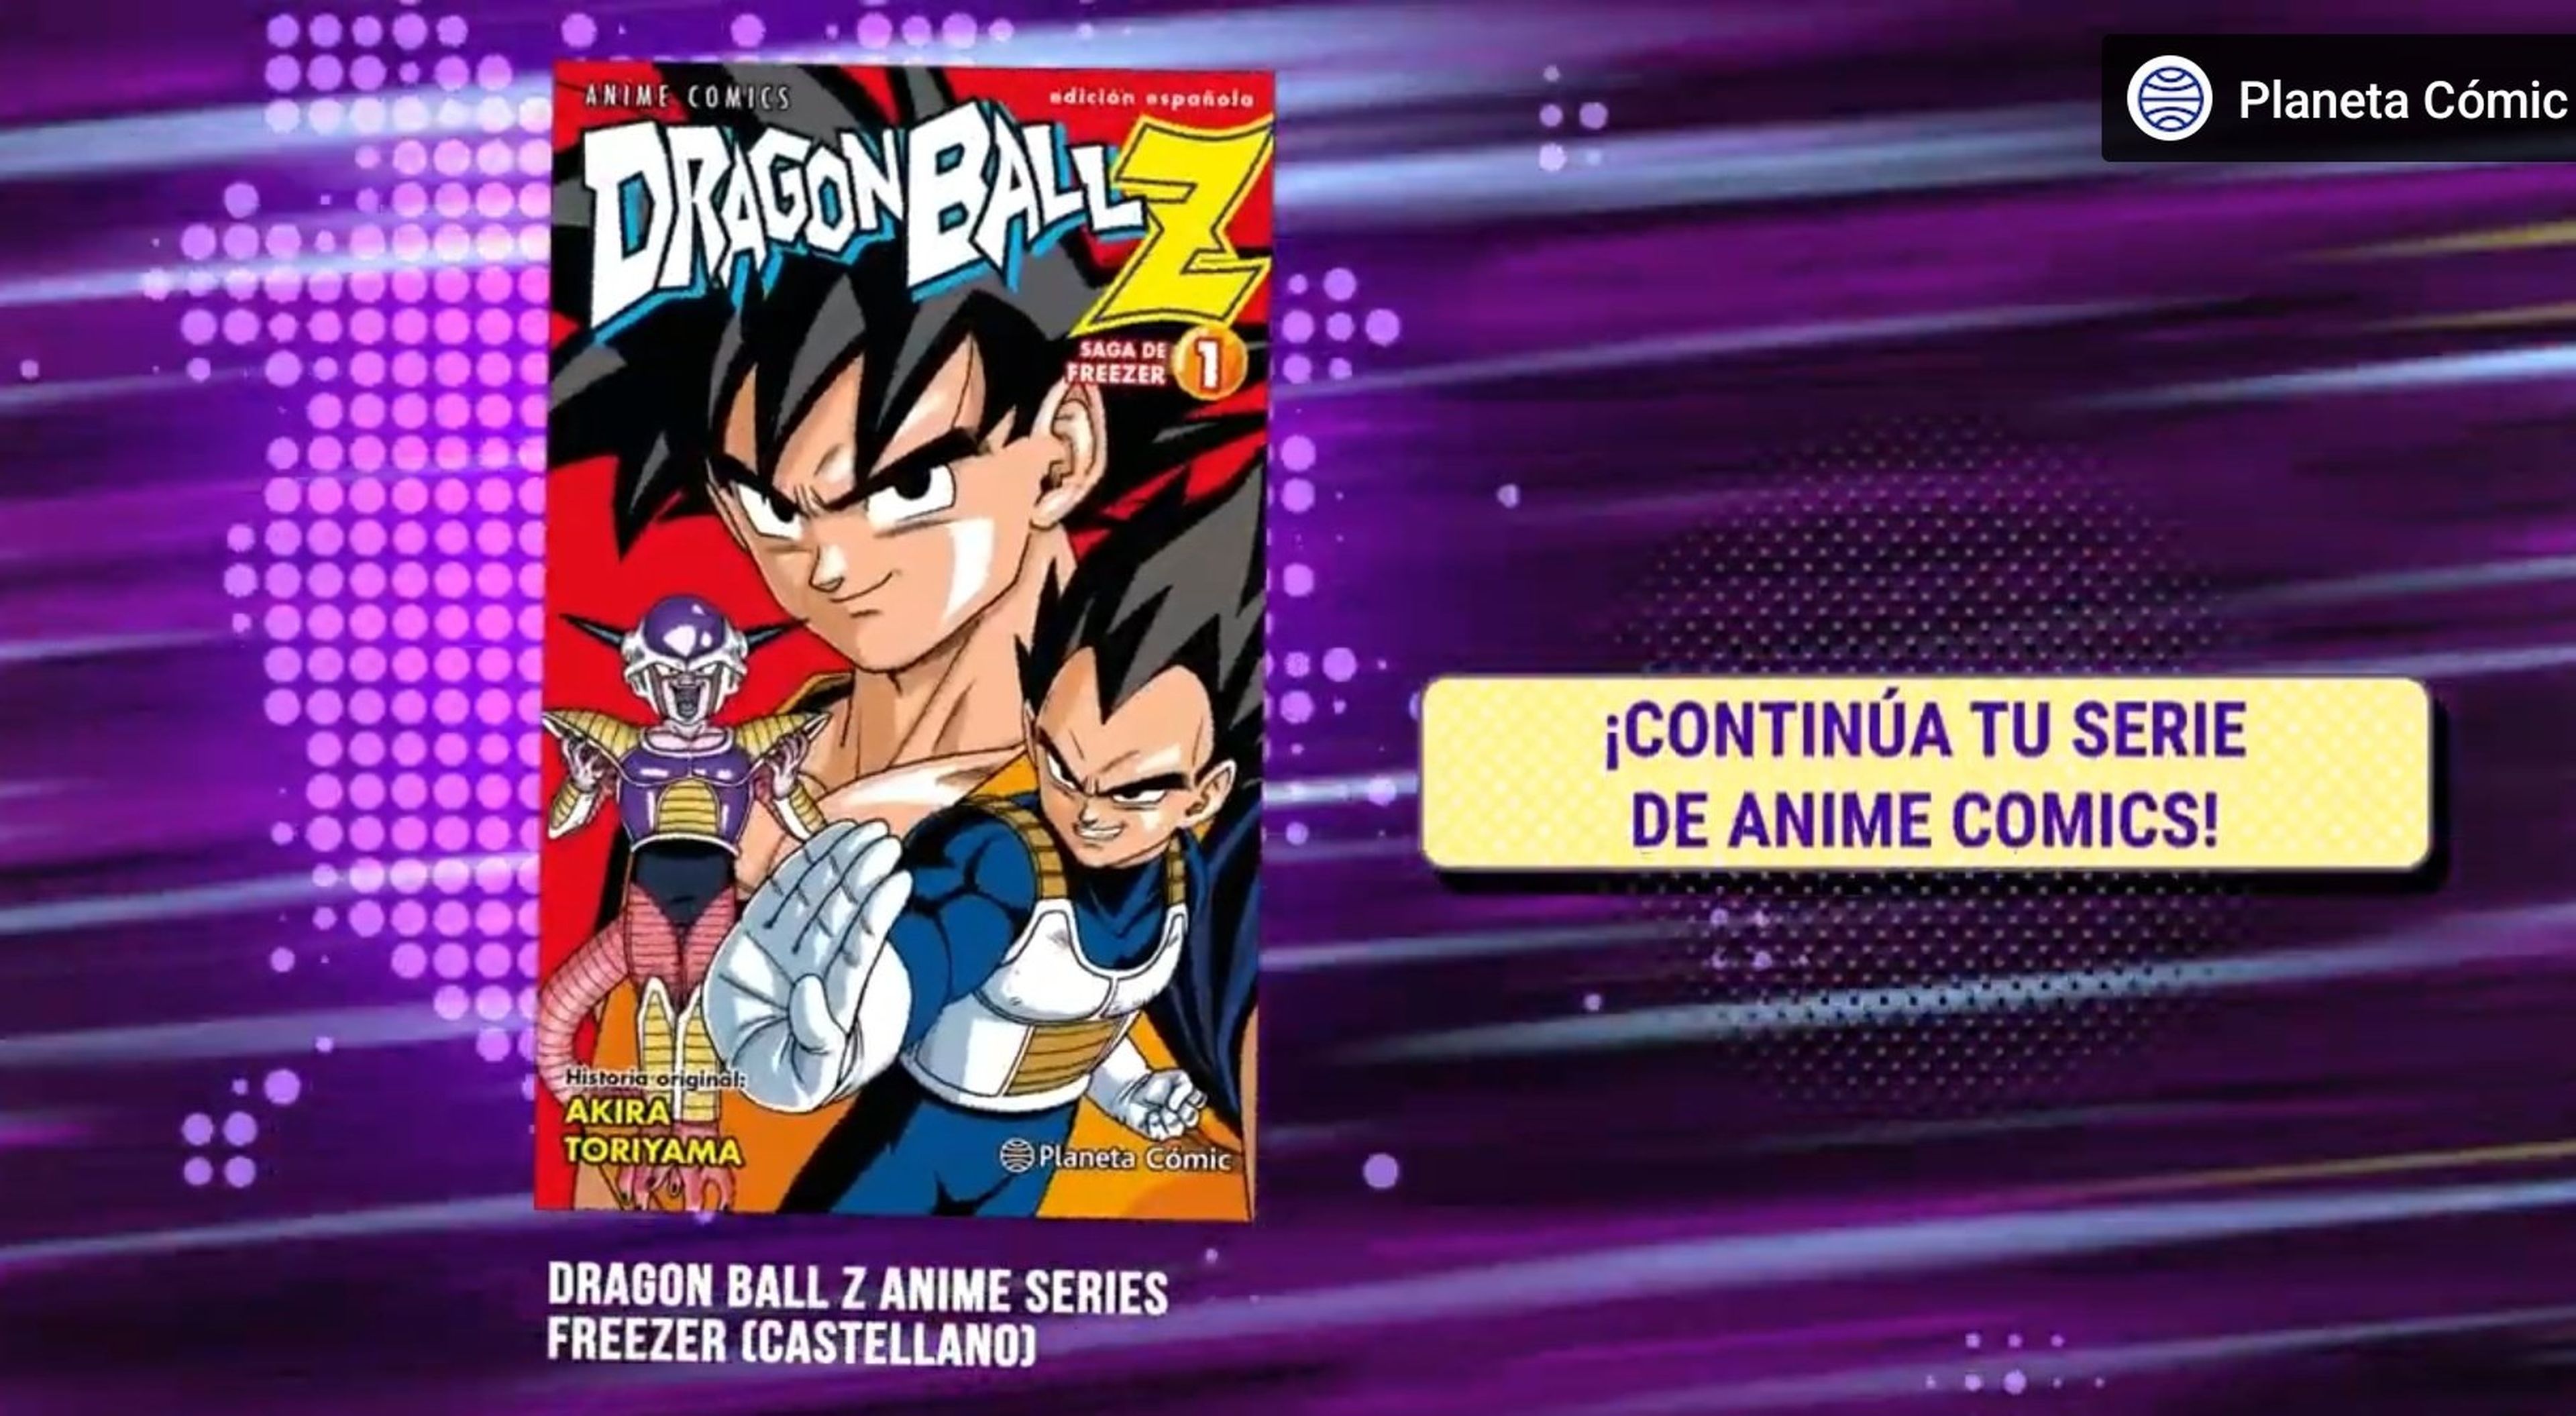 Dragon Ball Z - Planeta Cómic resucita los anime cómics de la serie y lanzará los tomos de la saga de Namek